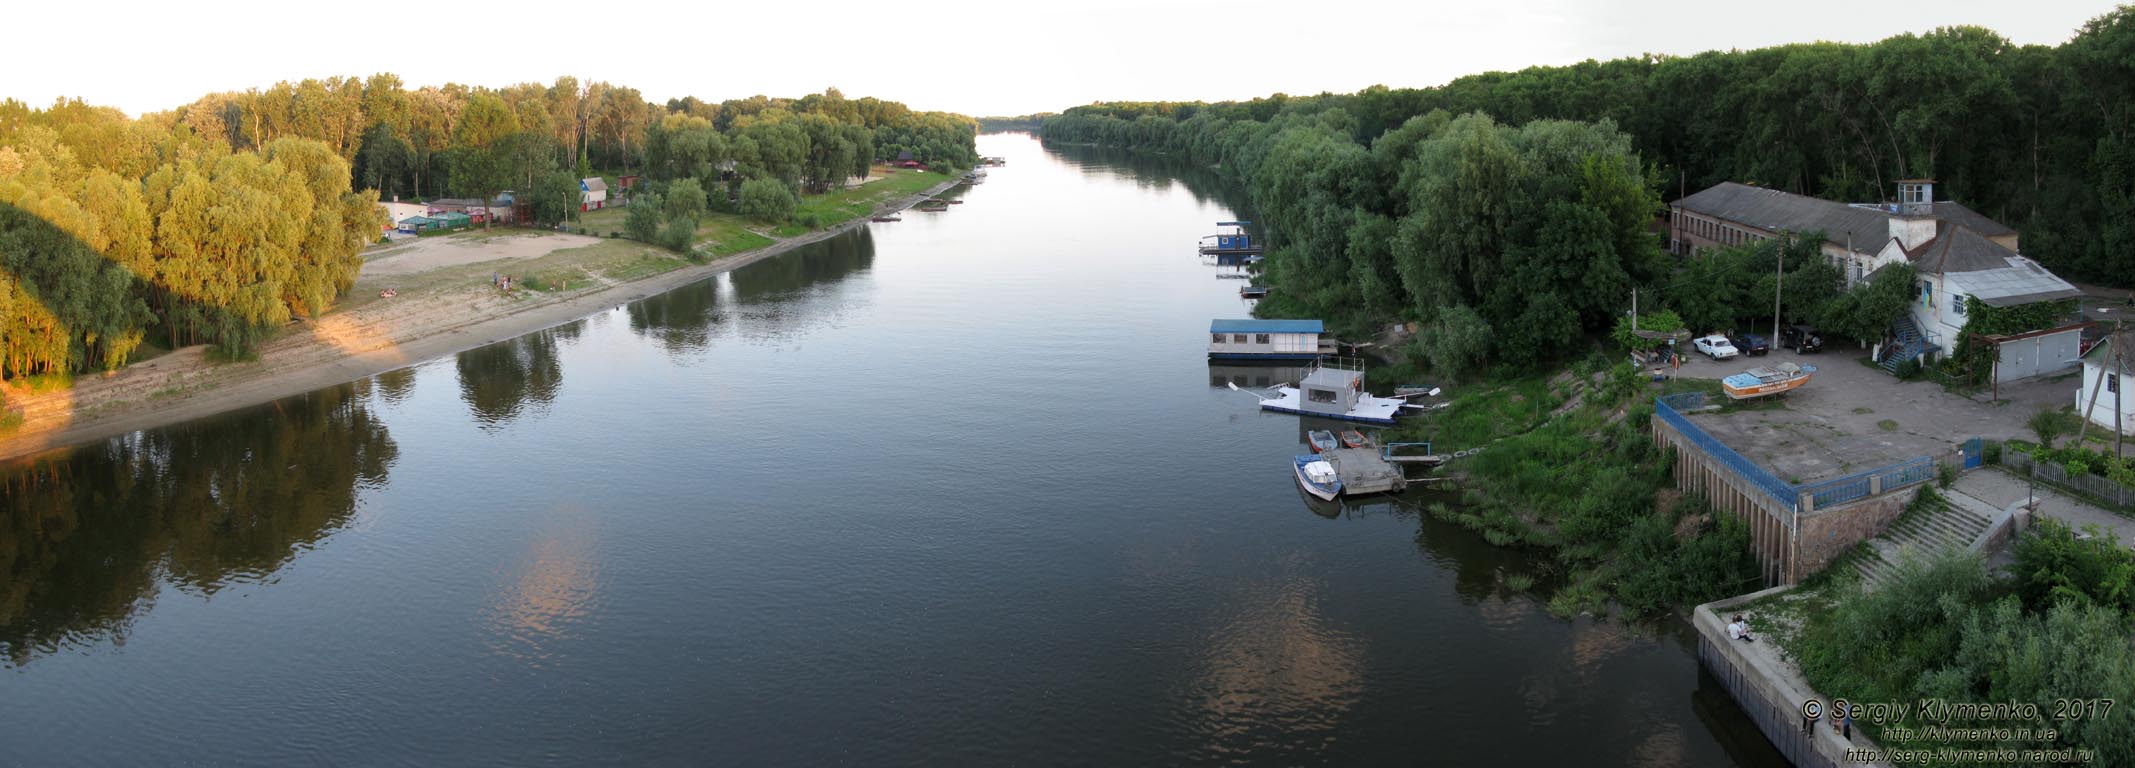 Чернигов. Фото. Вид на реку Десна ("по течению") с пешеходного моста. Панорама ~120°.